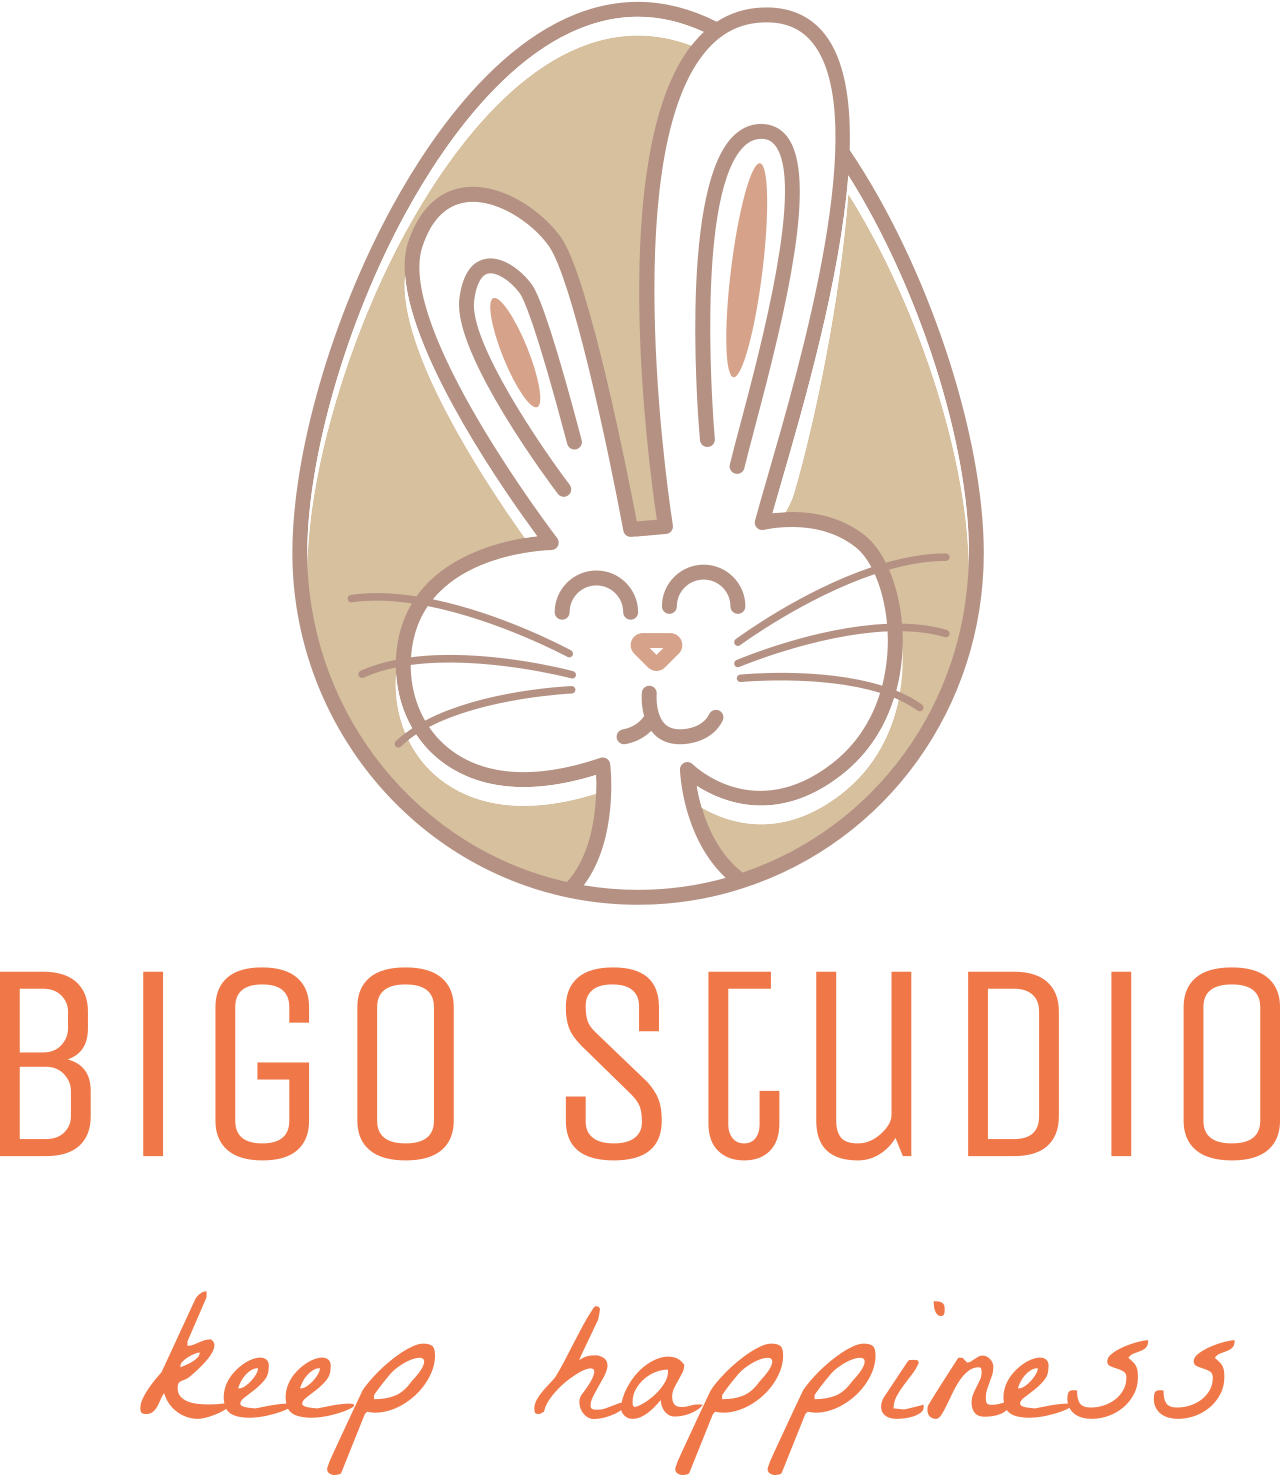 Bigo studio's web page